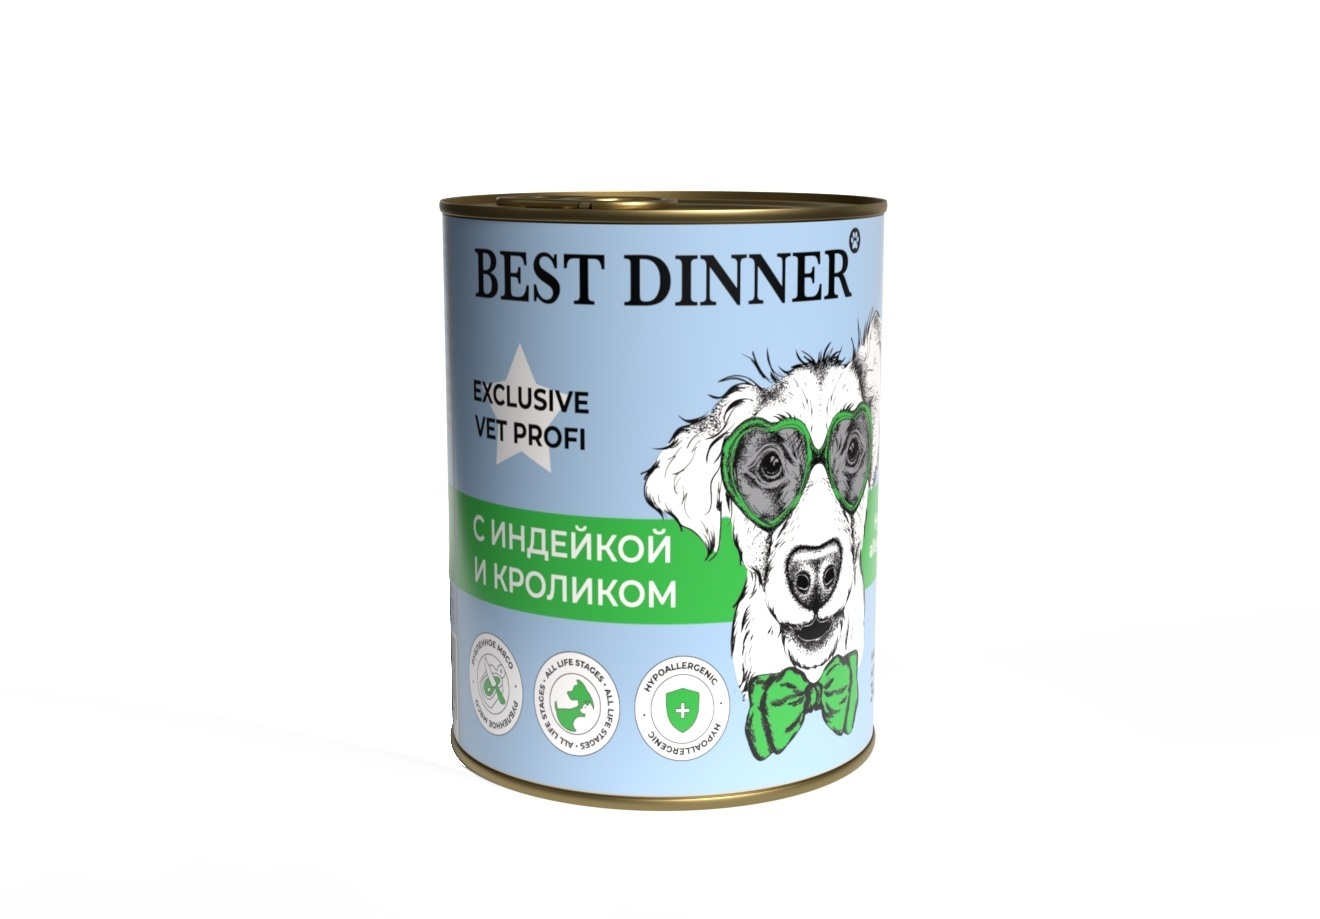 Best Dinner Best Dinner гипоаллергенные консервы Индейка и кролик, для собак всех пород (340 г) best dinner best dinner гипоаллергенные консервы индейка и кролик для собак всех пород 340 г